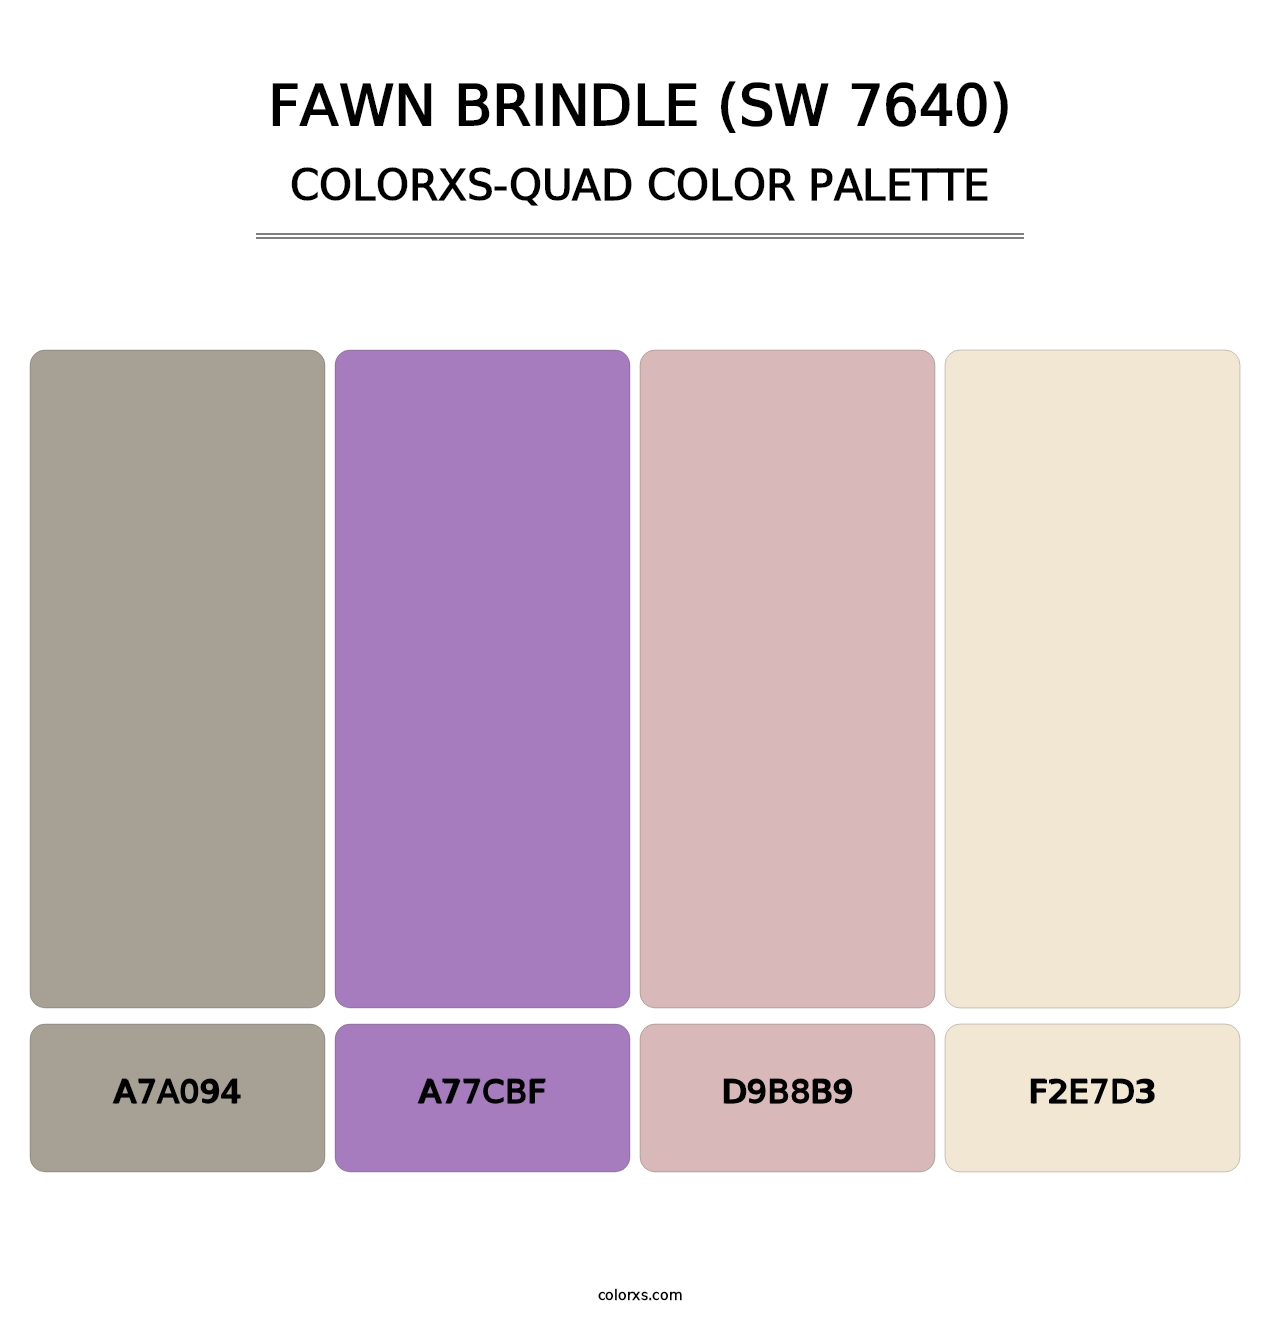 Fawn Brindle (SW 7640) - Colorxs Quad Palette